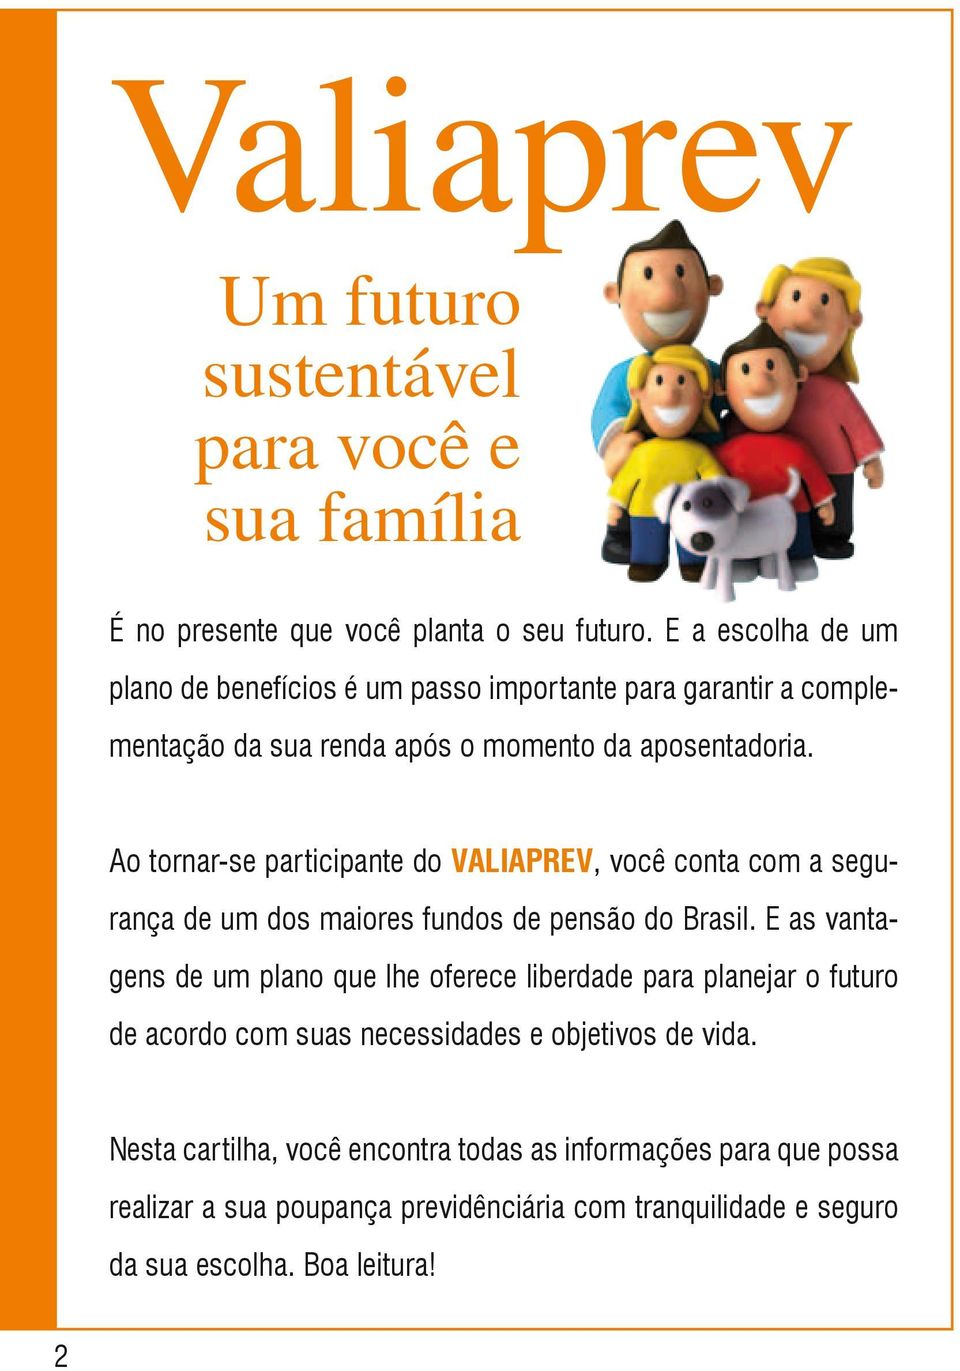 Ao tornar-se participante do VALIAPREV, você conta com a segurança de um dos maiores fundos de pensão do Brasil.